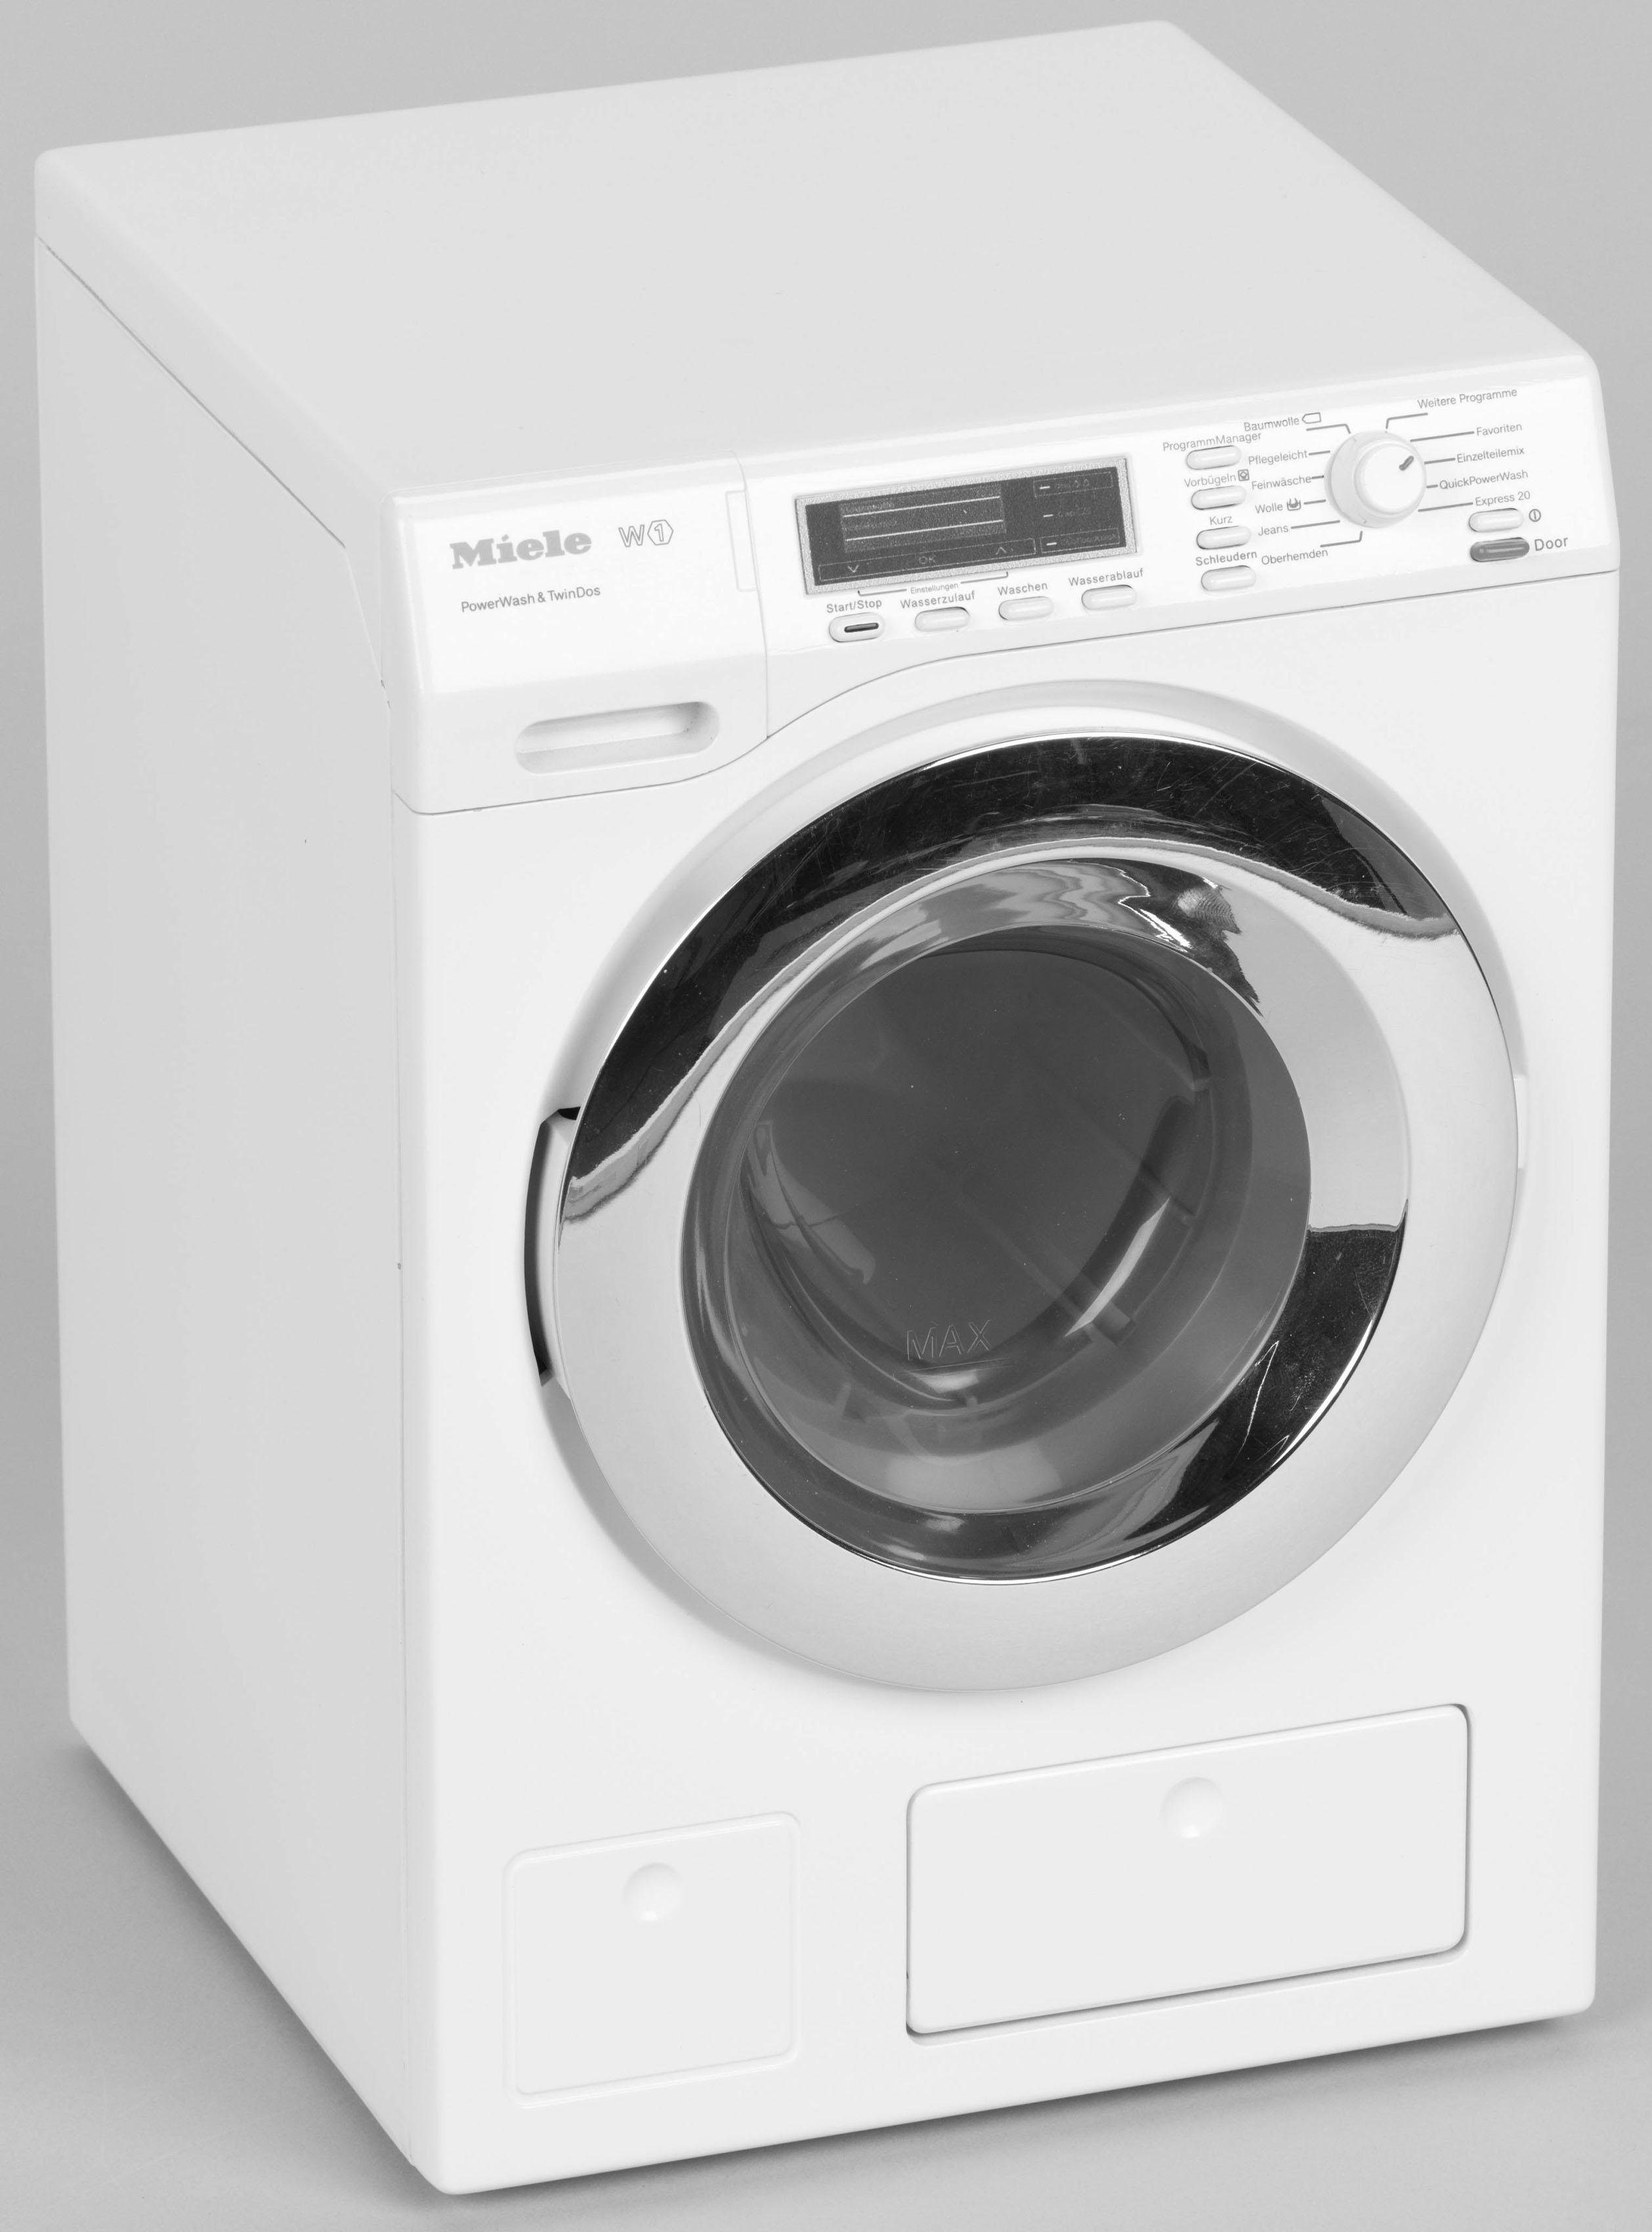 Image of Klein Kinder-Waschmaschine »Miele Waschmaschine«, mit Wasser befüllbar